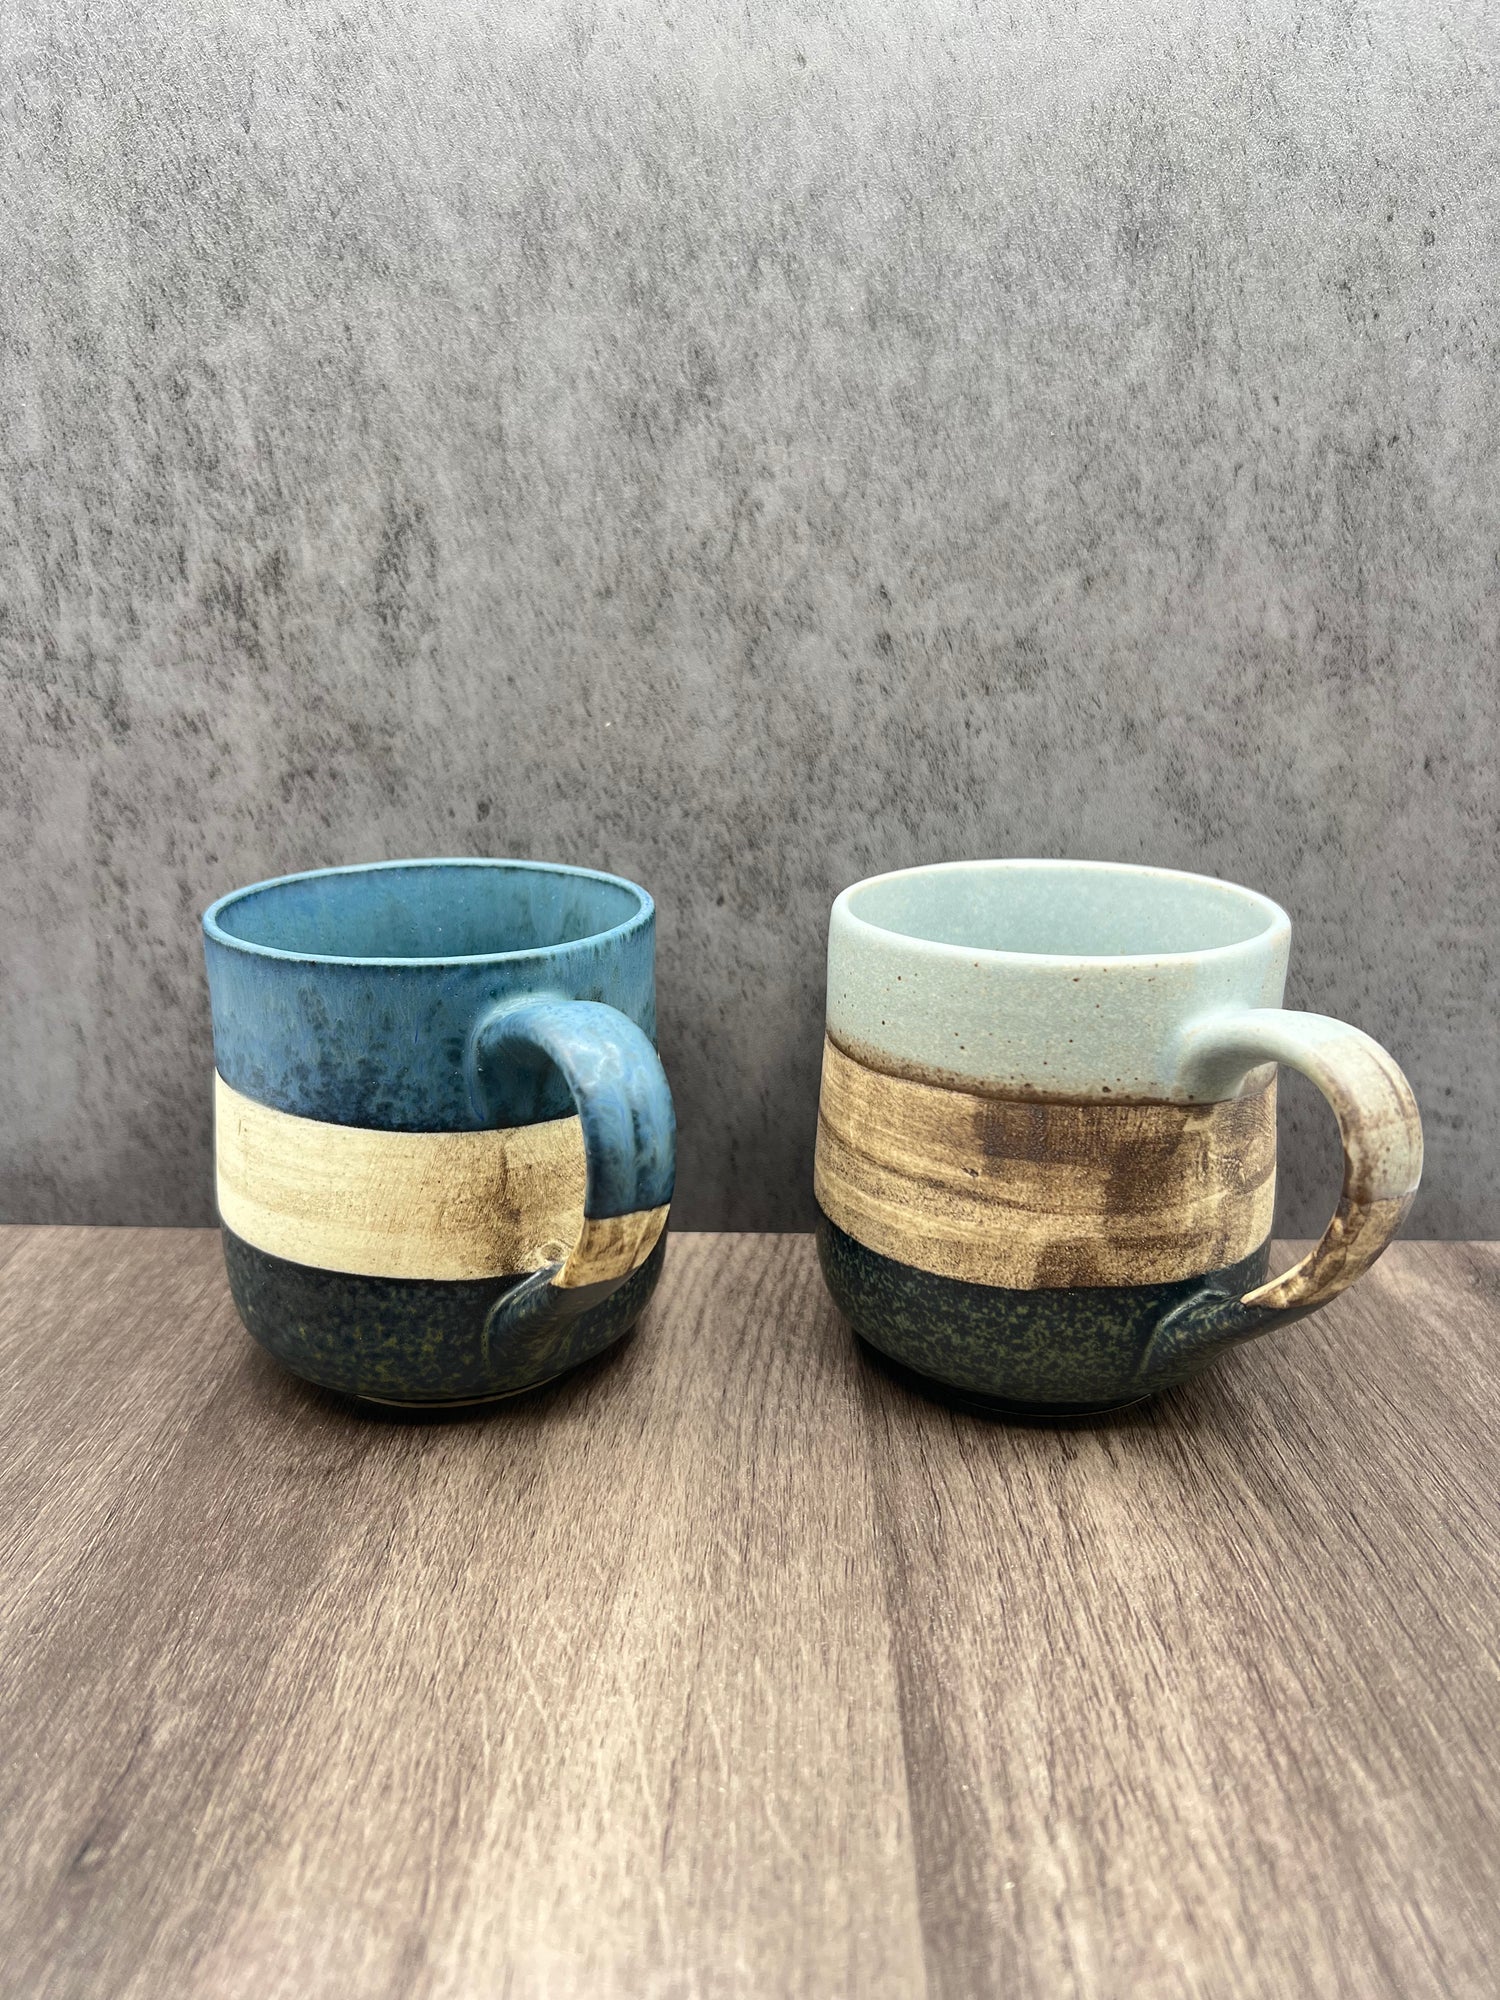 Sephia Dark Blue Mug - Japanese Tea Mug